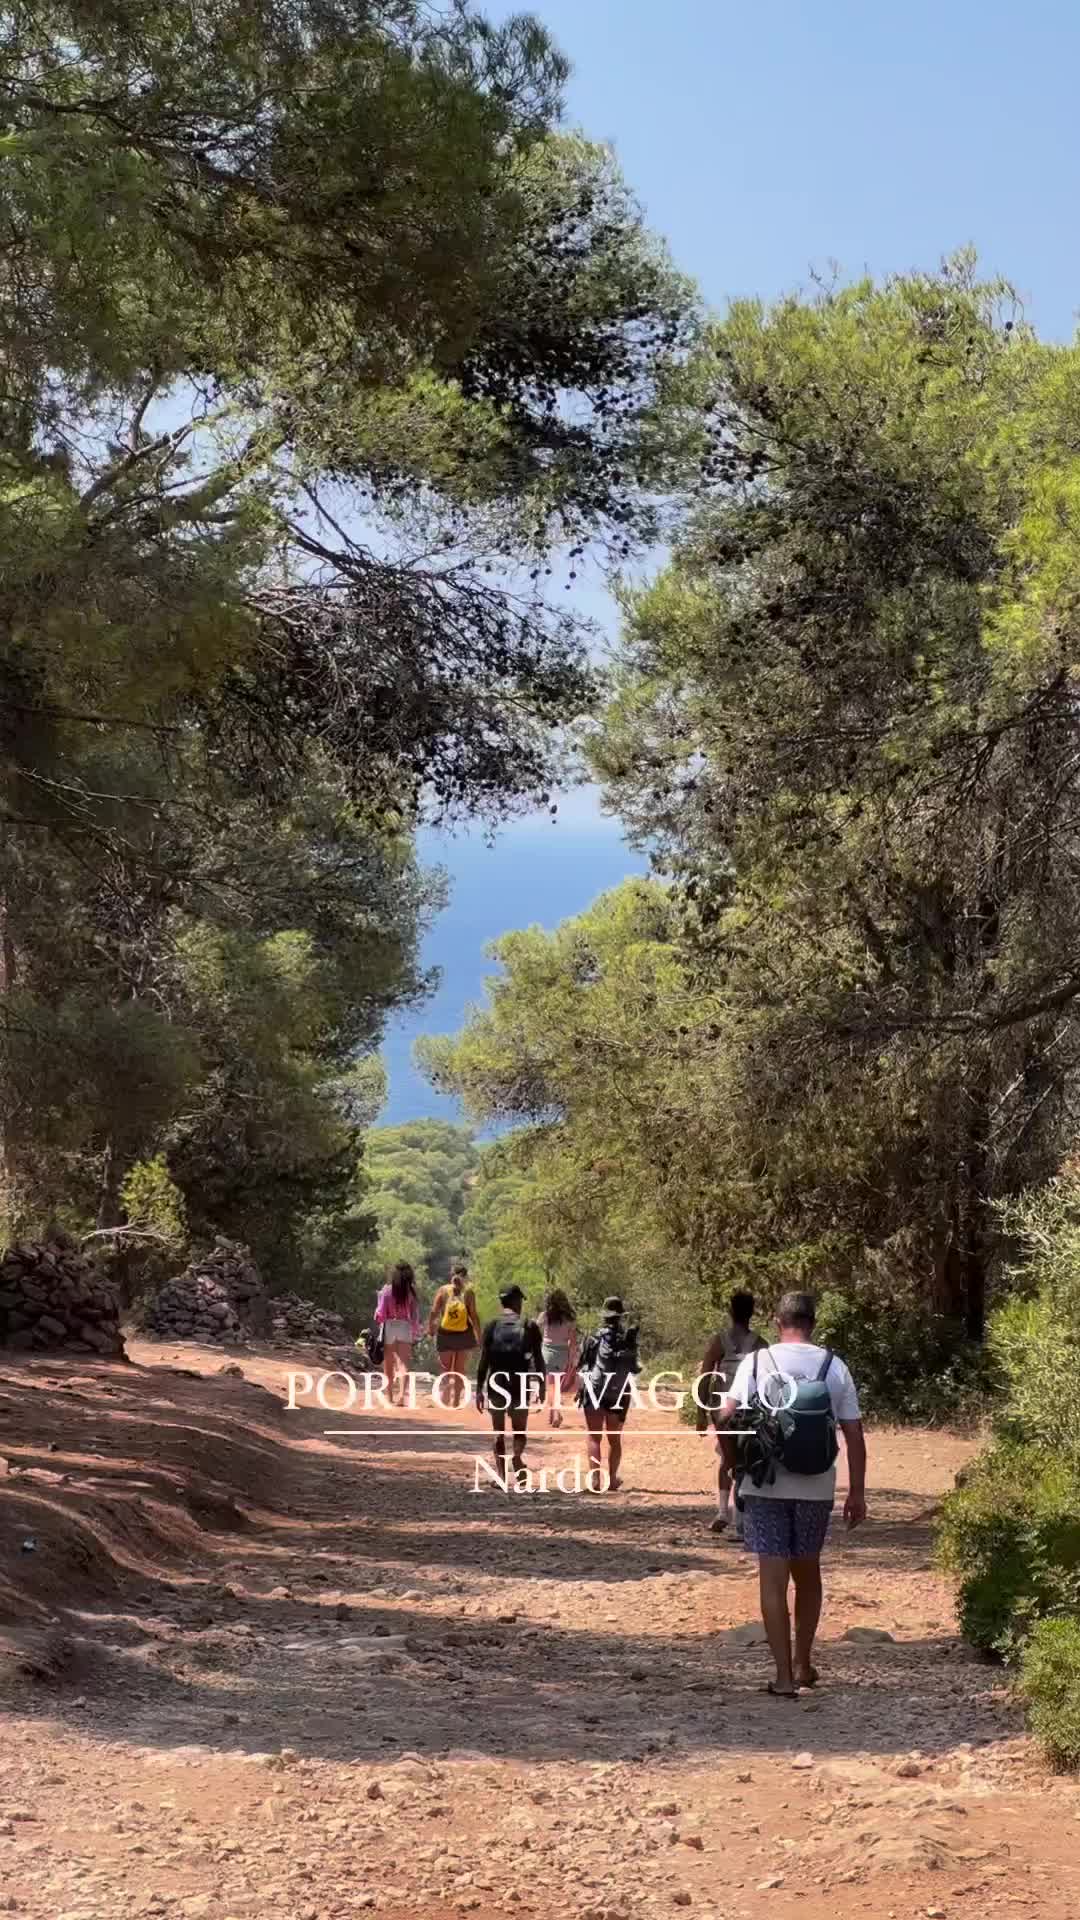 Explore Porto Selvaggio: Puglia's Natural Paradise